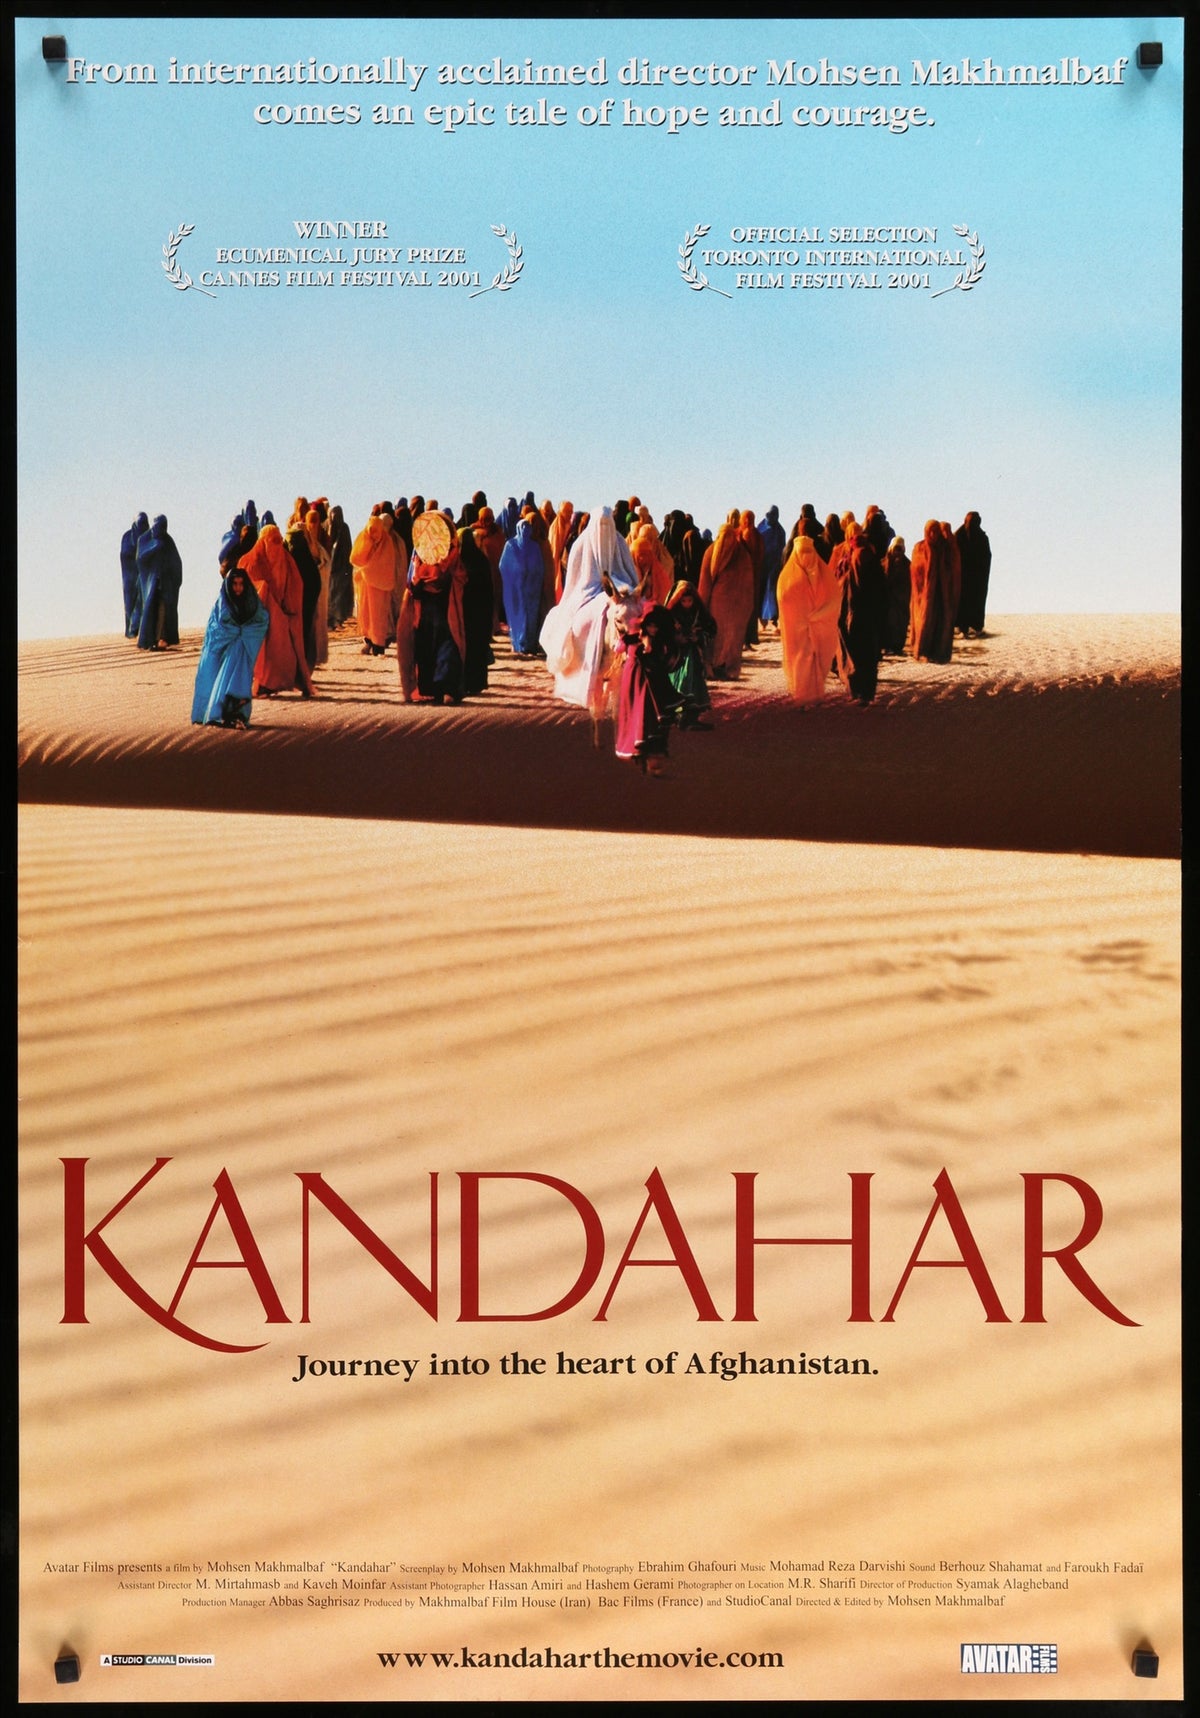 Kandahar (2001) original movie poster for sale at Original Film Art